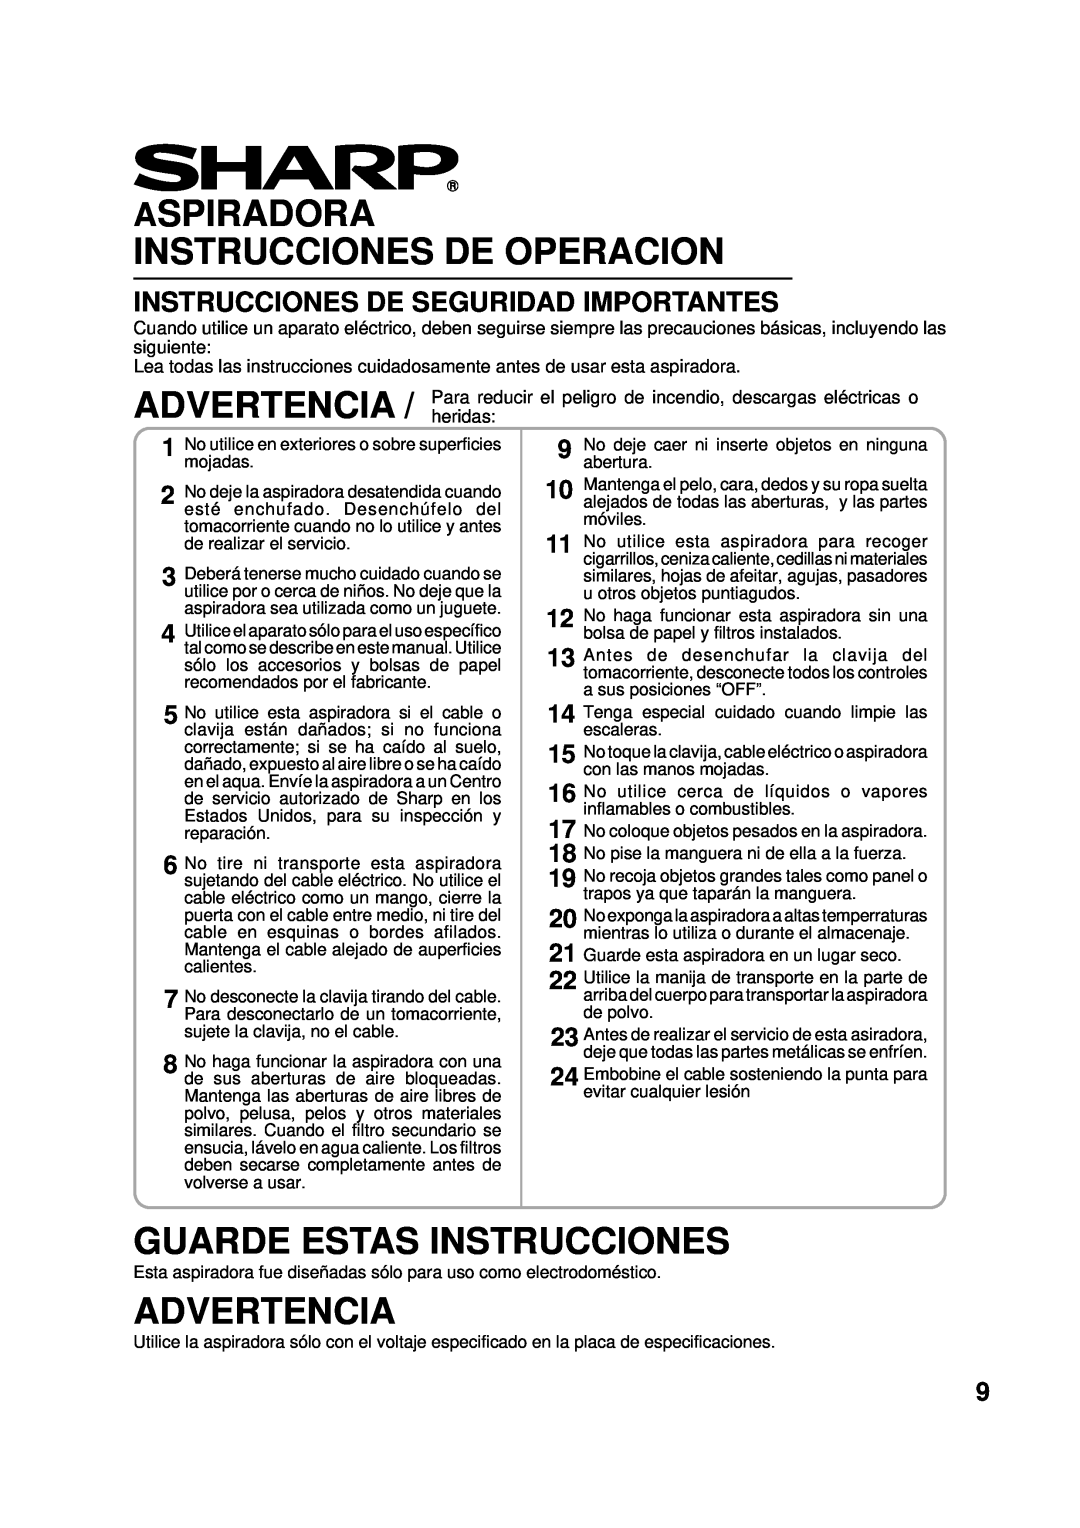 Sharp EC-6312P operation manual Aspiradora Instrucciones De Operacion, Guarde Estas Instrucciones, Advertencia 